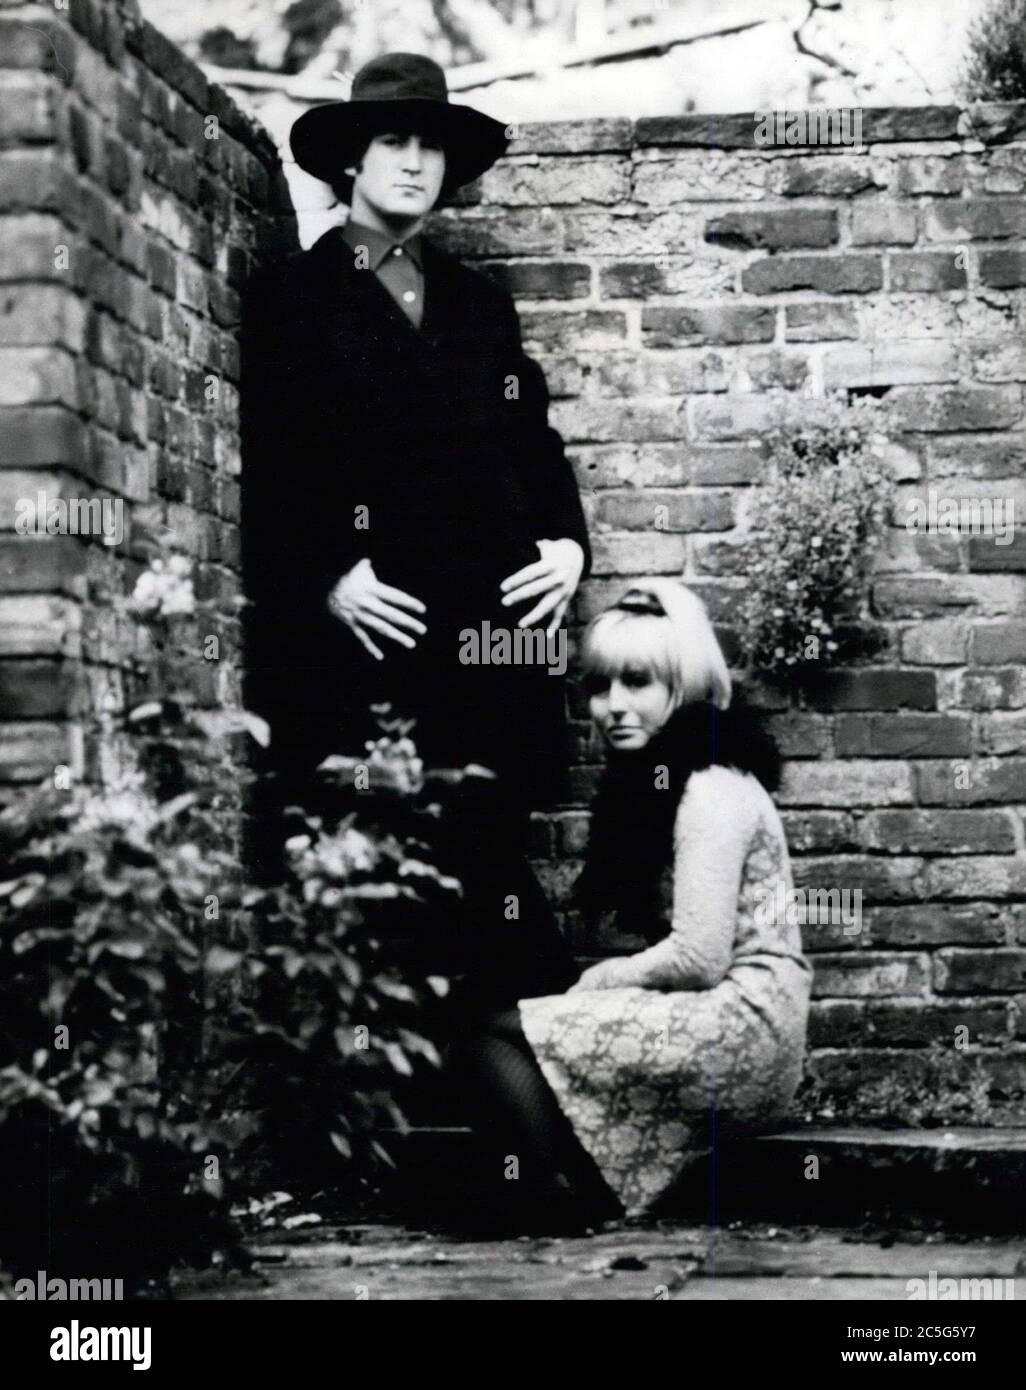 Circa 1963 - Inghilterra, Regno Unito - JOHN LENNON e sua moglie CYNTHIA LENNON, nel loro bel giardino segreto. (Credit Image: © Keystone Pictures USA/ZUMAPRESS.com) Foto Stock